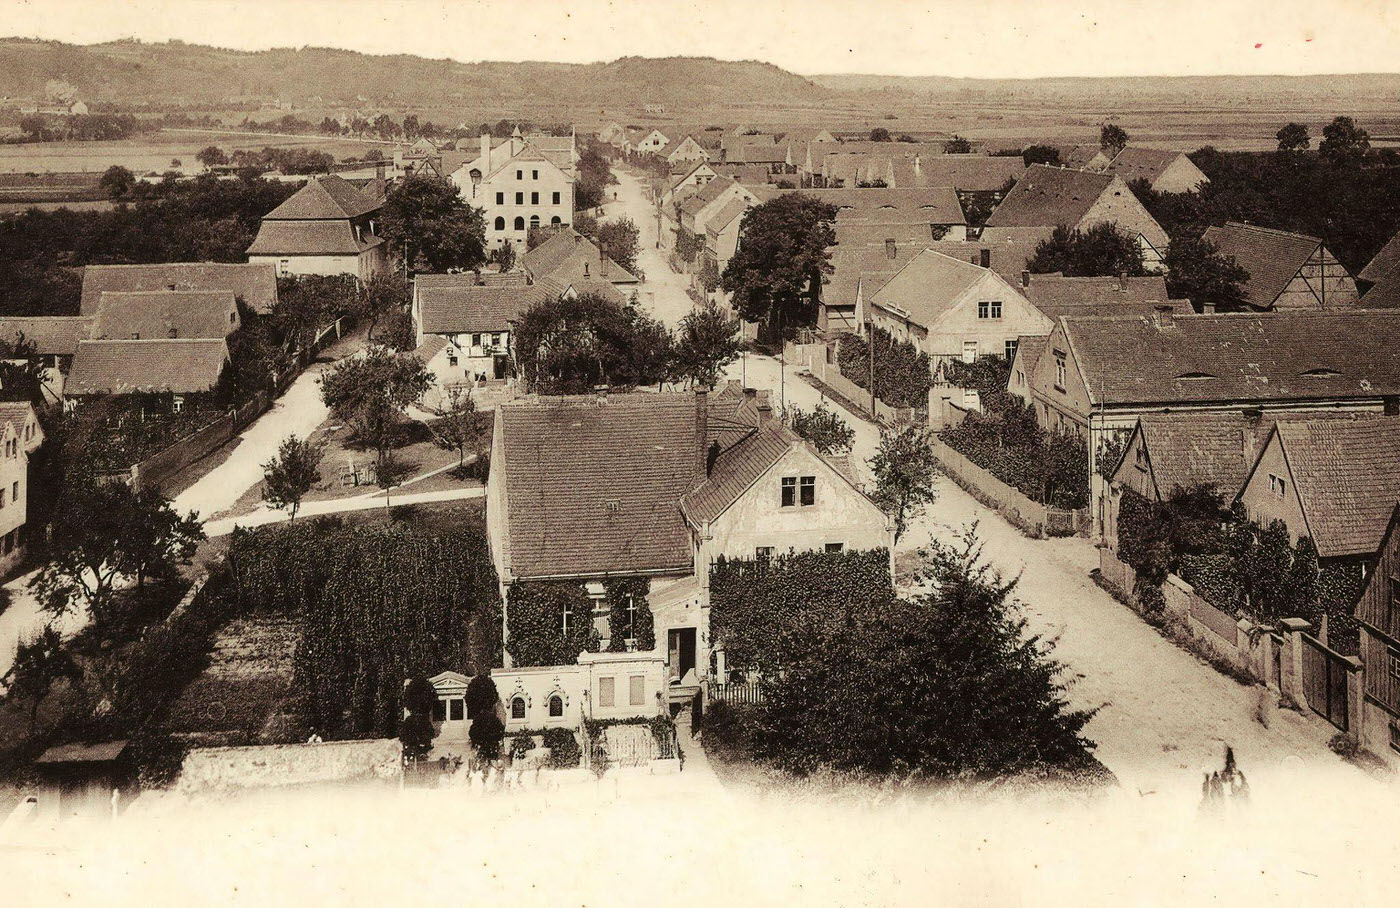 Buildings in Landkreis Meissen, Brockwitz, 1899.